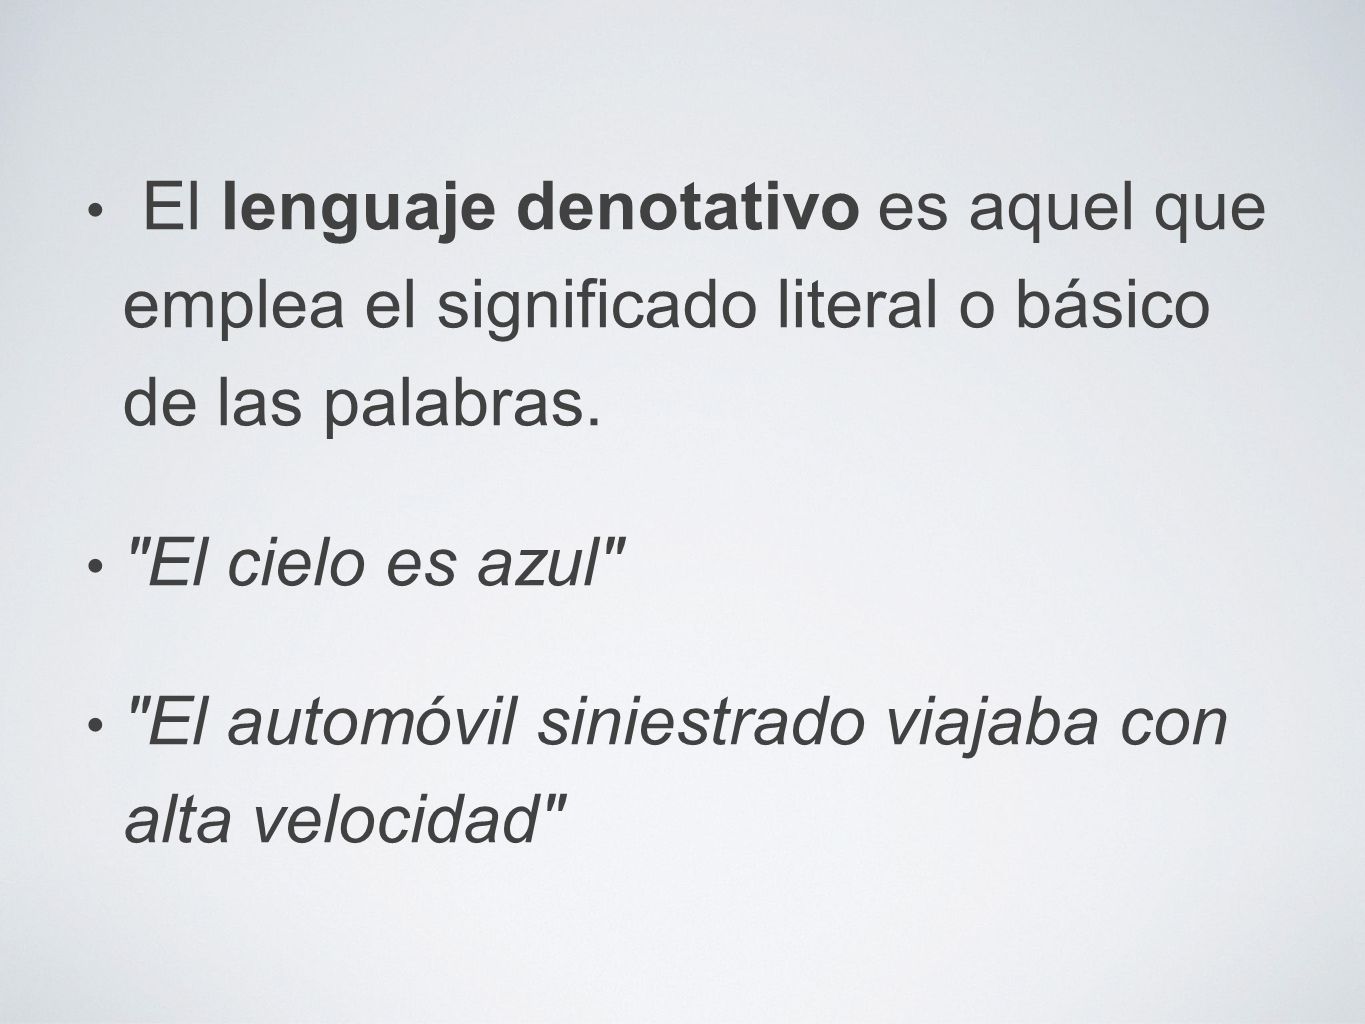 El lenguaje denotativo es aquel que emplea el significado literal o básico de las palabras.